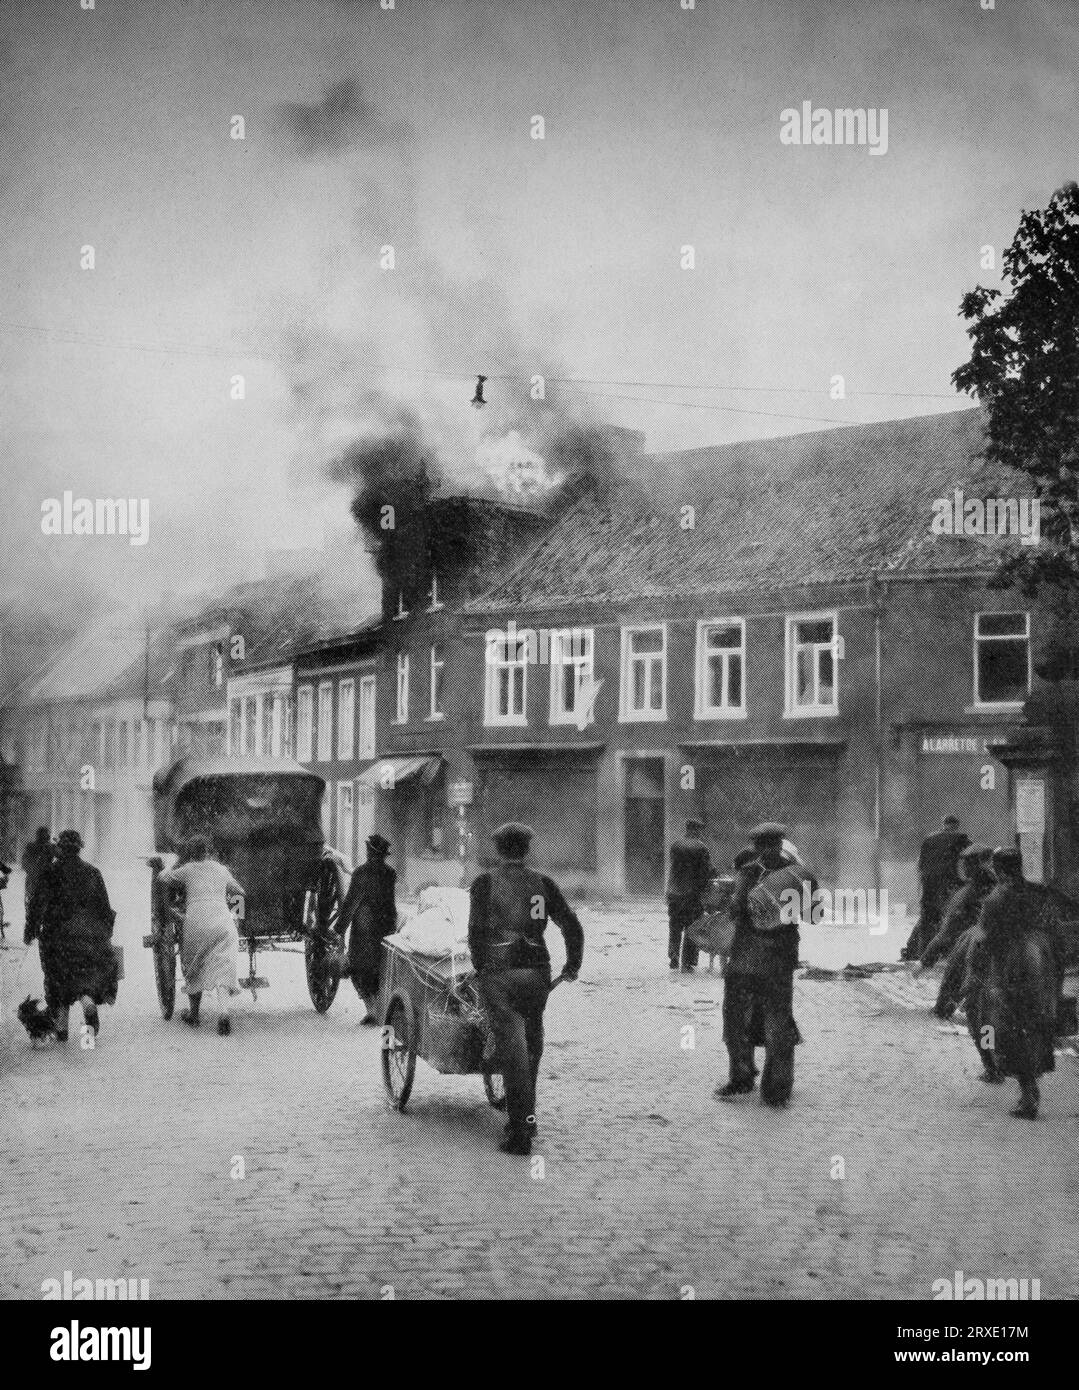 Am 10. Und 11. Mai 1940, während des Zweiten Weltkriegs, durchquerten die Flüchtlinge ein brennendes Dorf in den unteren Ländern. Stockfoto